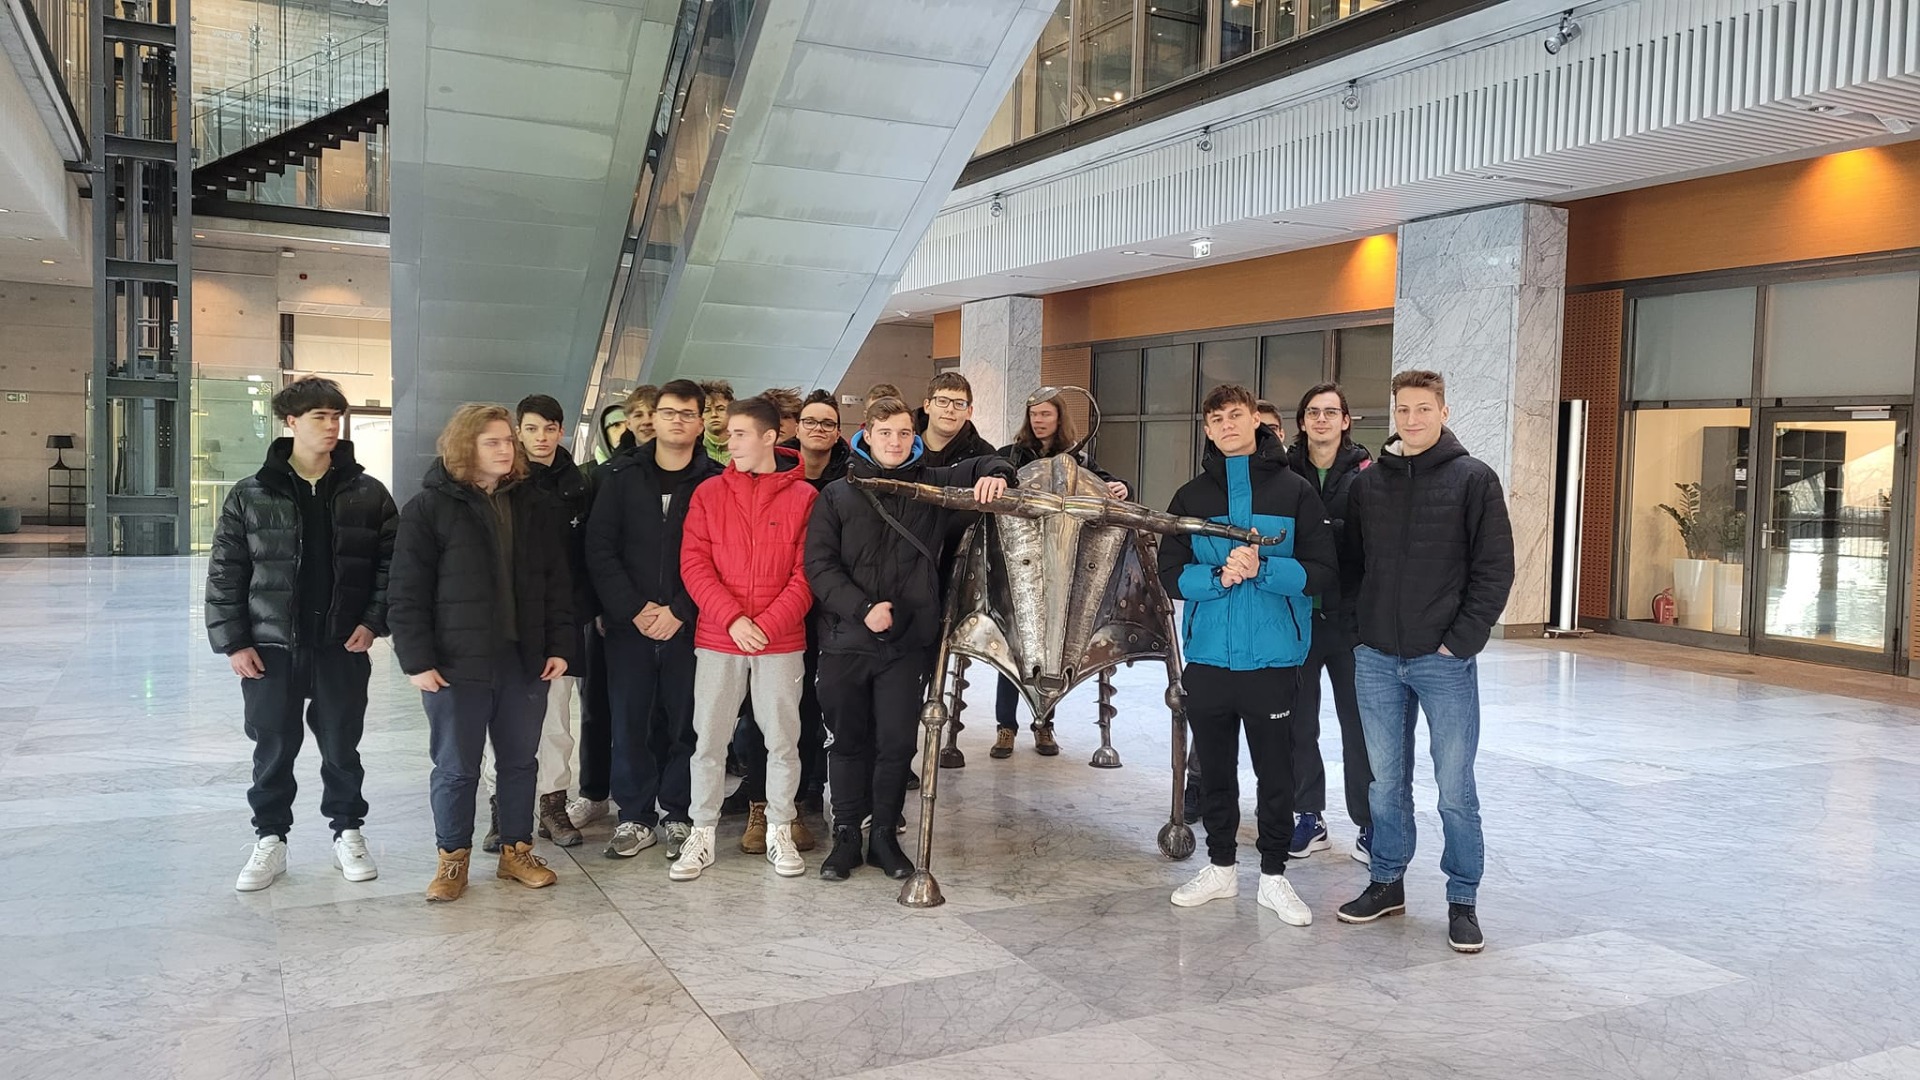 Grupa uczniów w budynku giełdy z inną rzeźbą byka. 